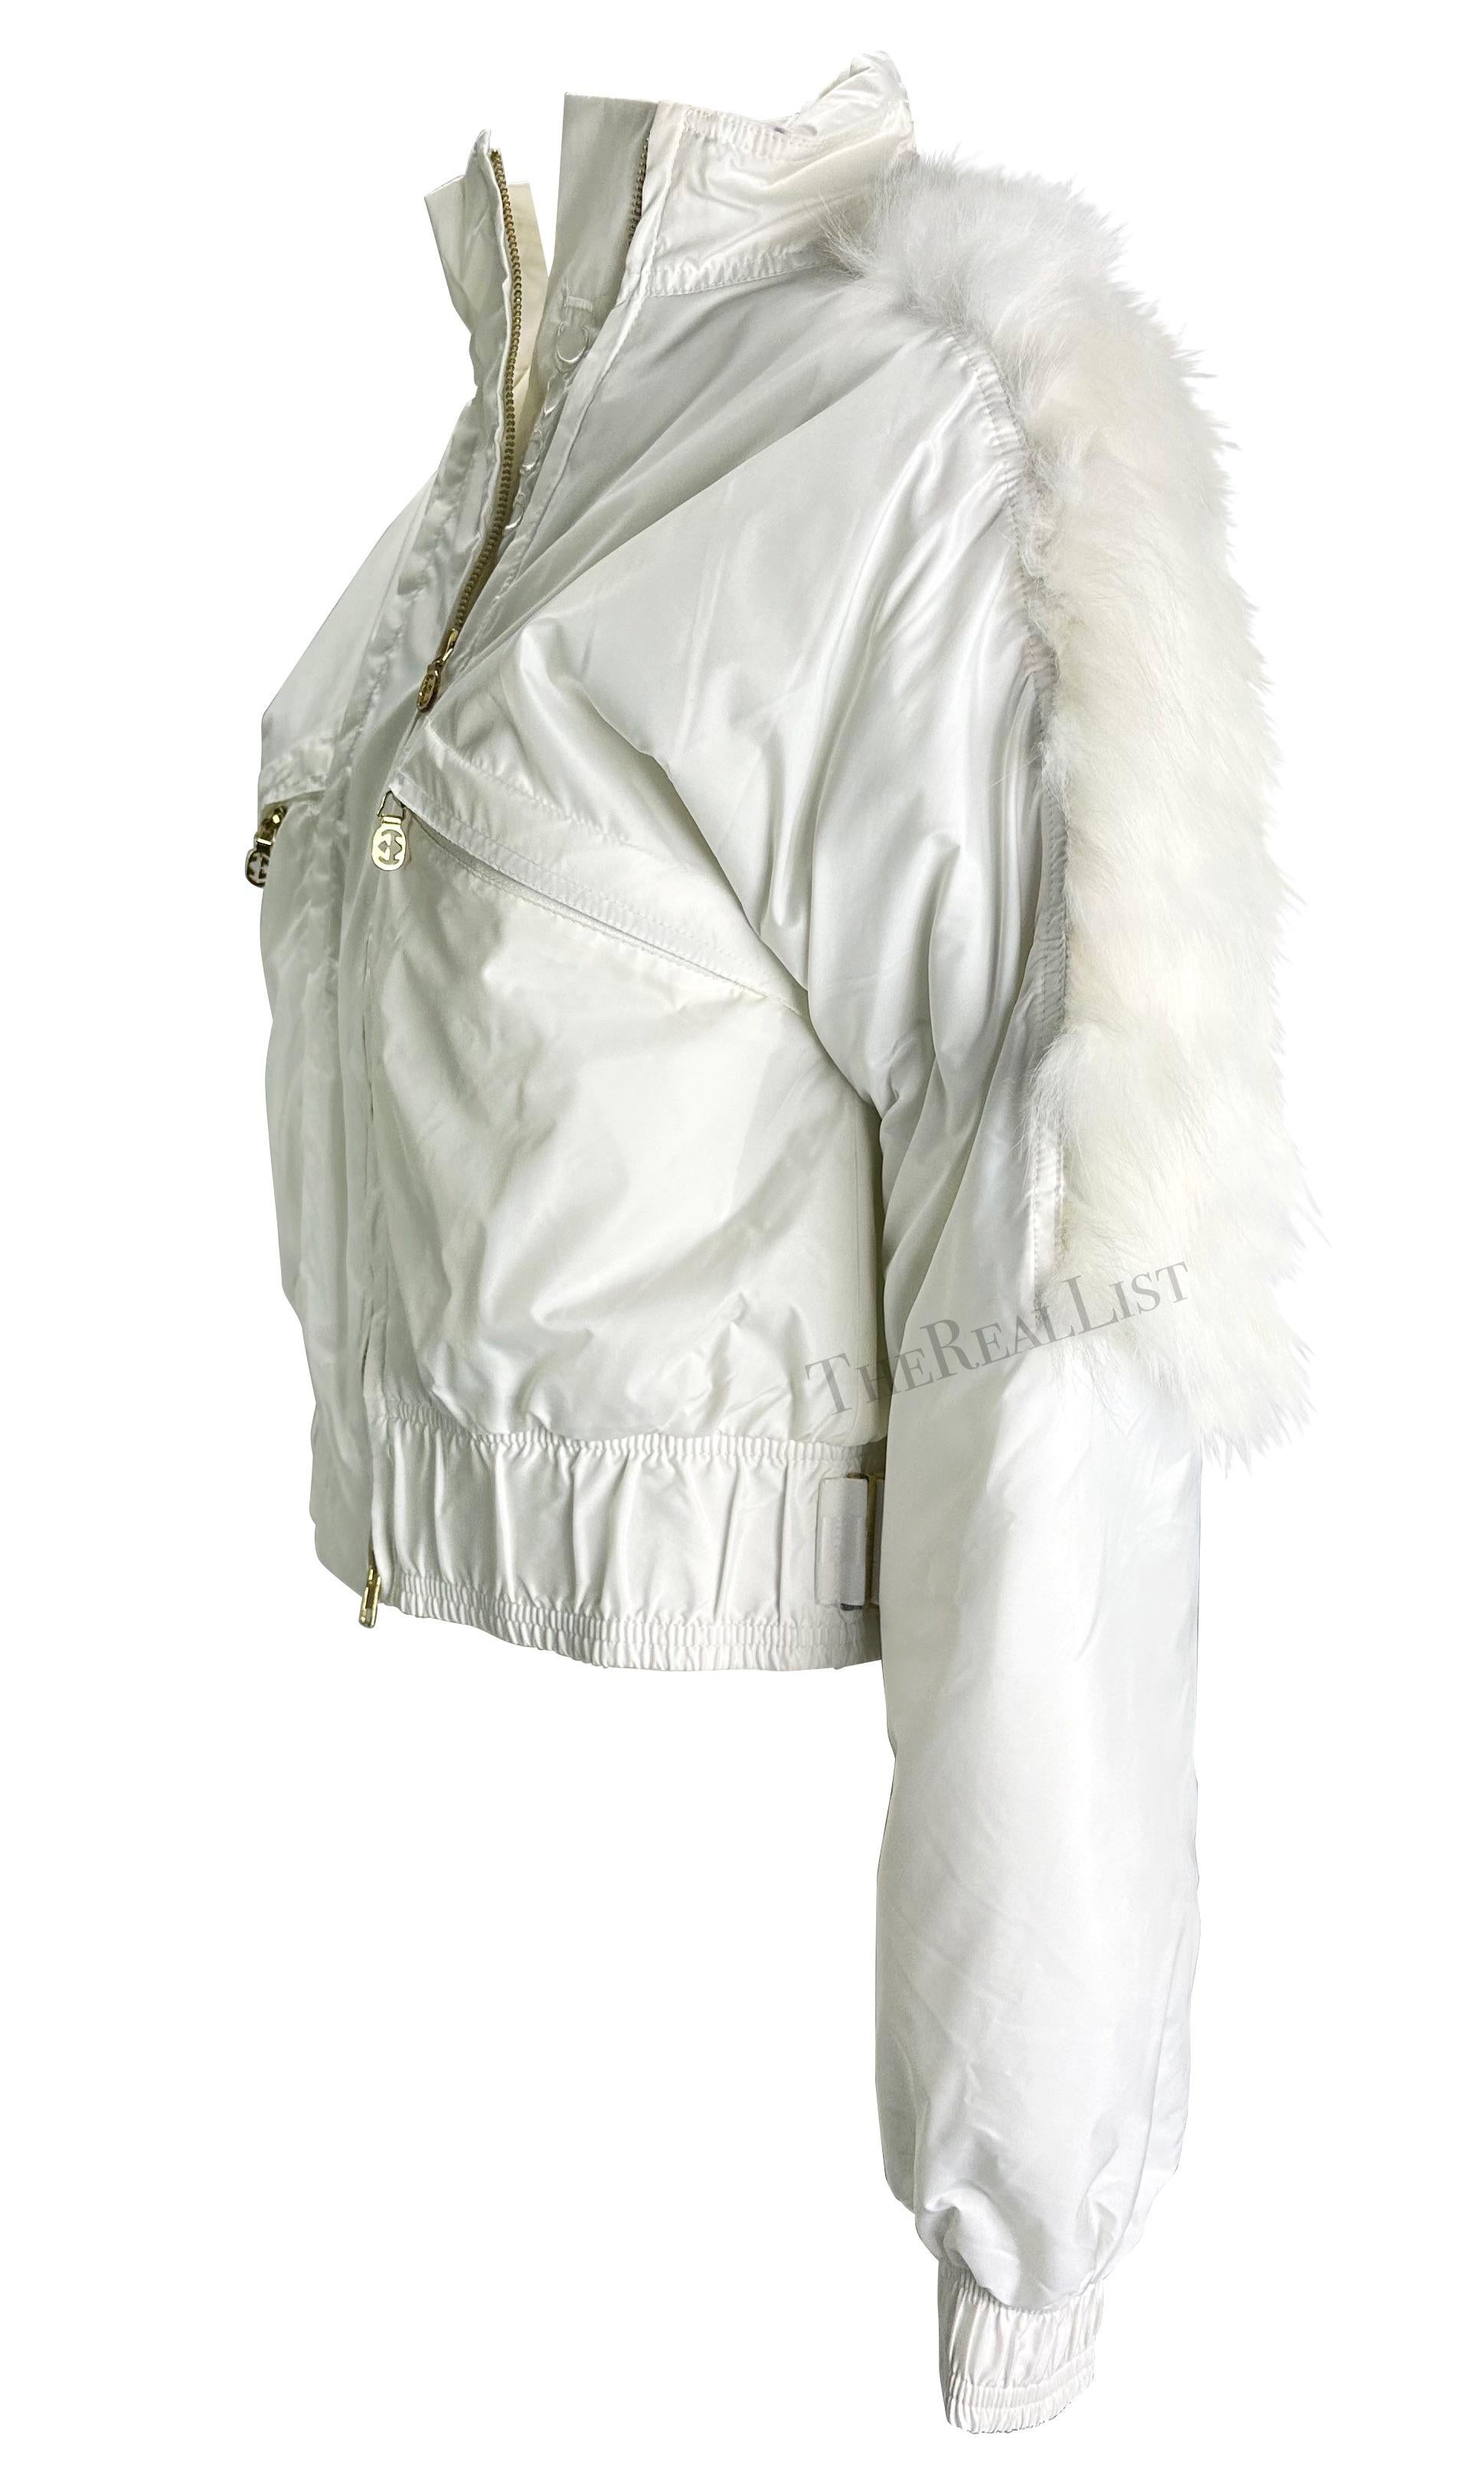 Ich präsentiere eine wunderschöne weiße Gucci-Pufferjacke, entworfen von Tom Ford. Diese Winterjacke aus der Herbst/Winter-Kollektion 2004 verfügt über einen Pelzbesatz, ein gesticktes Gucci-Logo, goldfarbene GG-Hardware und eine versteckte Kapuze.